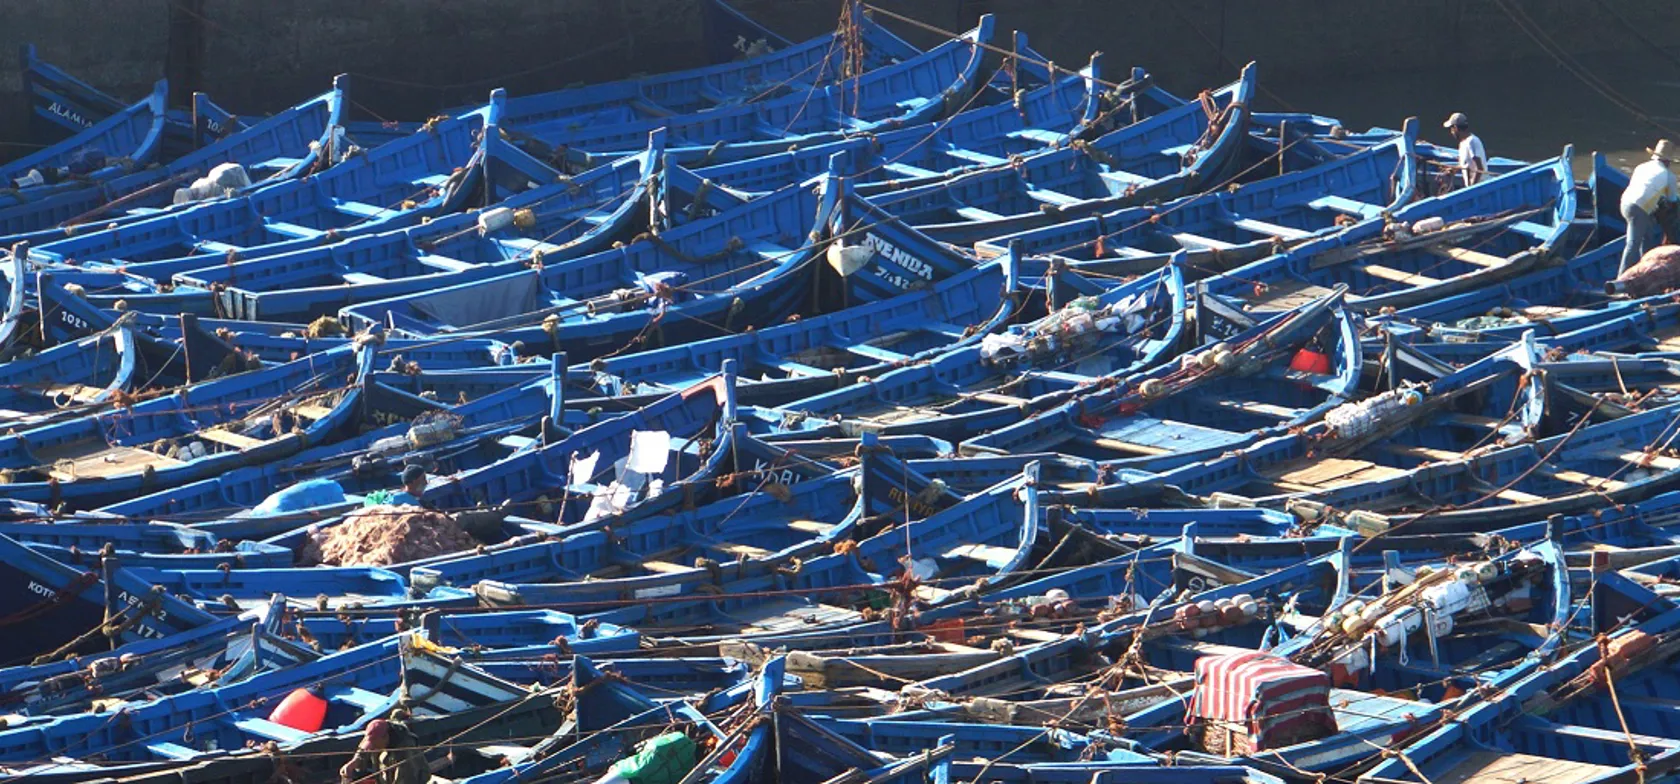 Blå er den gennemgående farve i kystbyen Essaouira, selv fiskernes joller har denne farve. Foto Claus Pehrsson